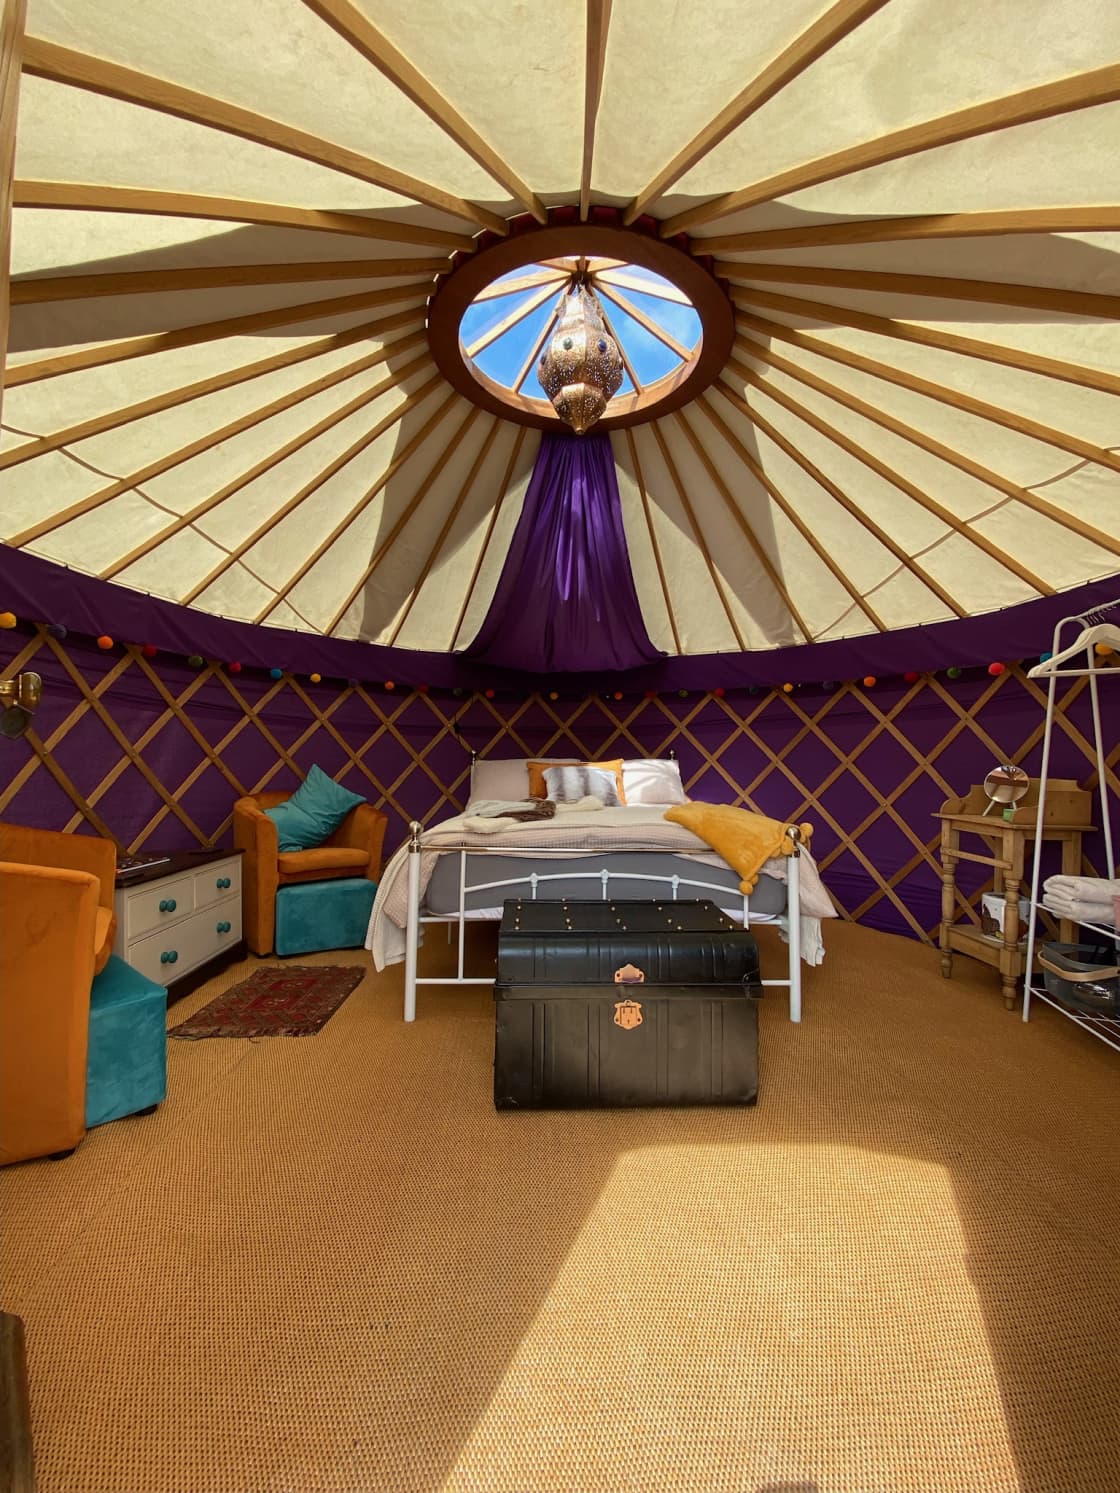 Inside the Yurt